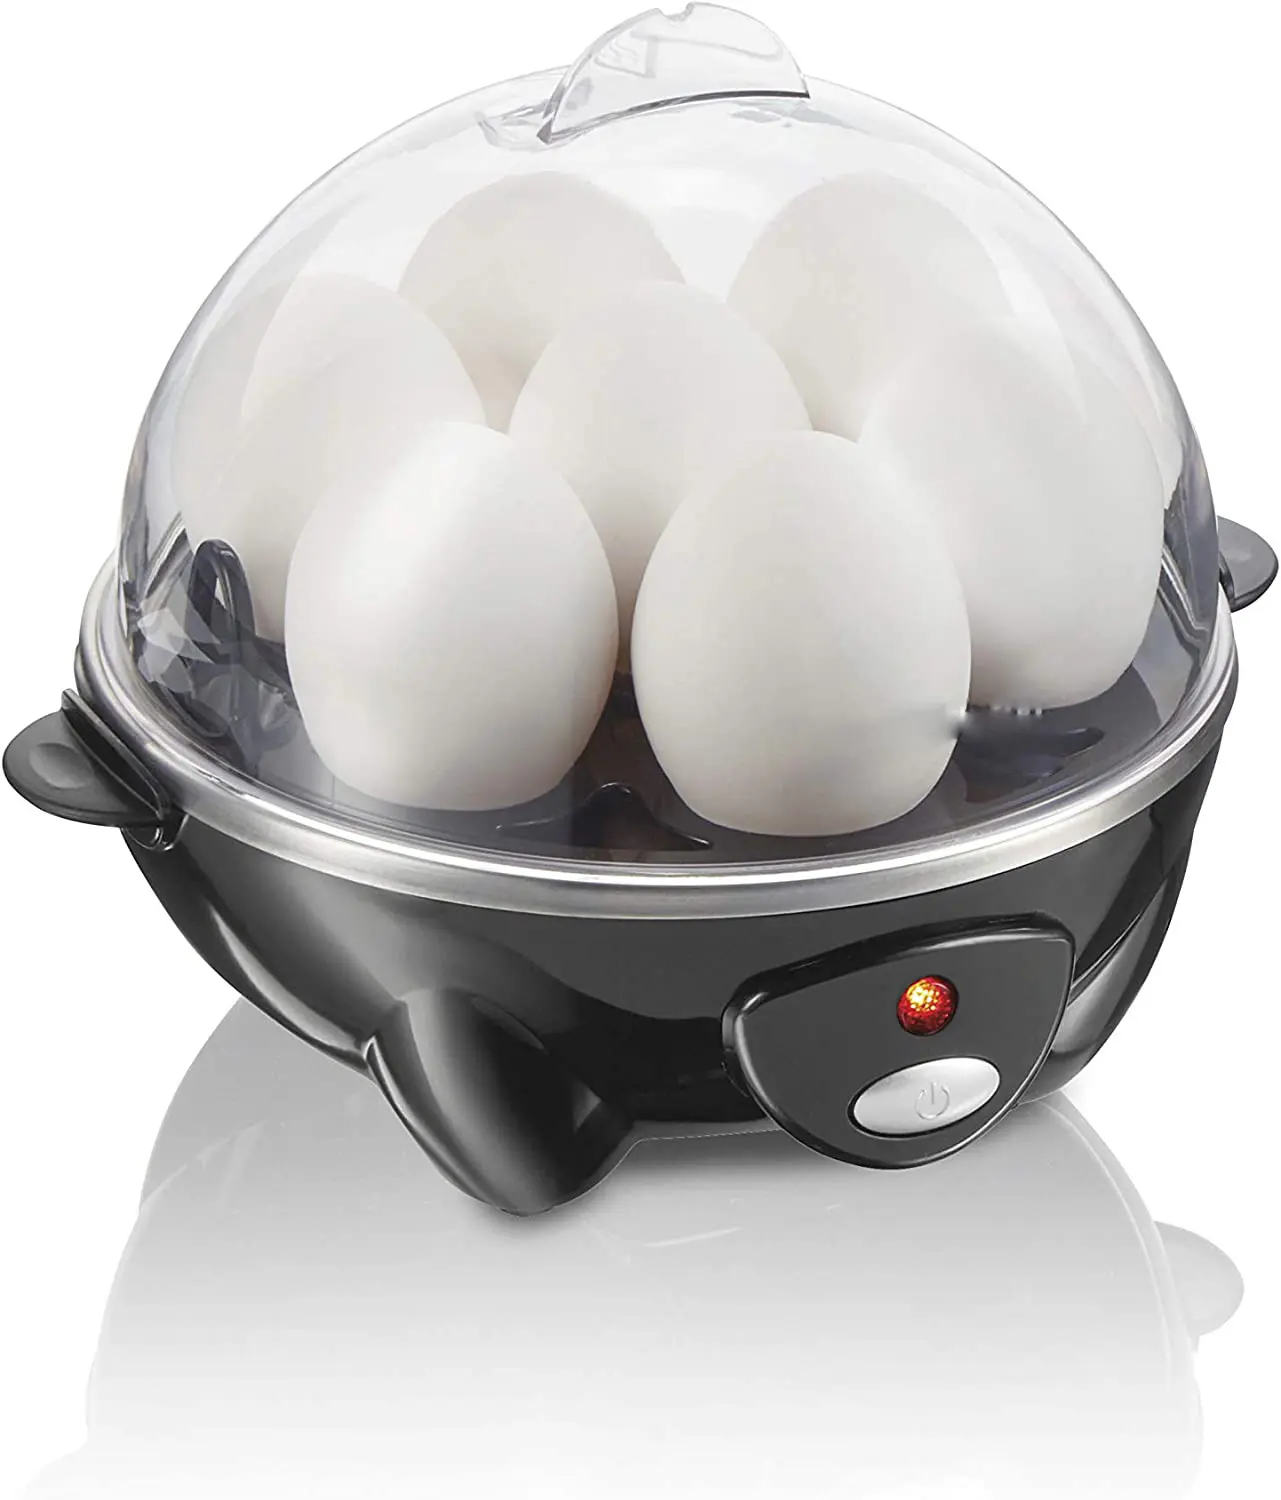 Uova di frittata bracconiere elettriche e fornello per uova sode morbido, medio con spegnimento automatico e cicalino, misurino incluso